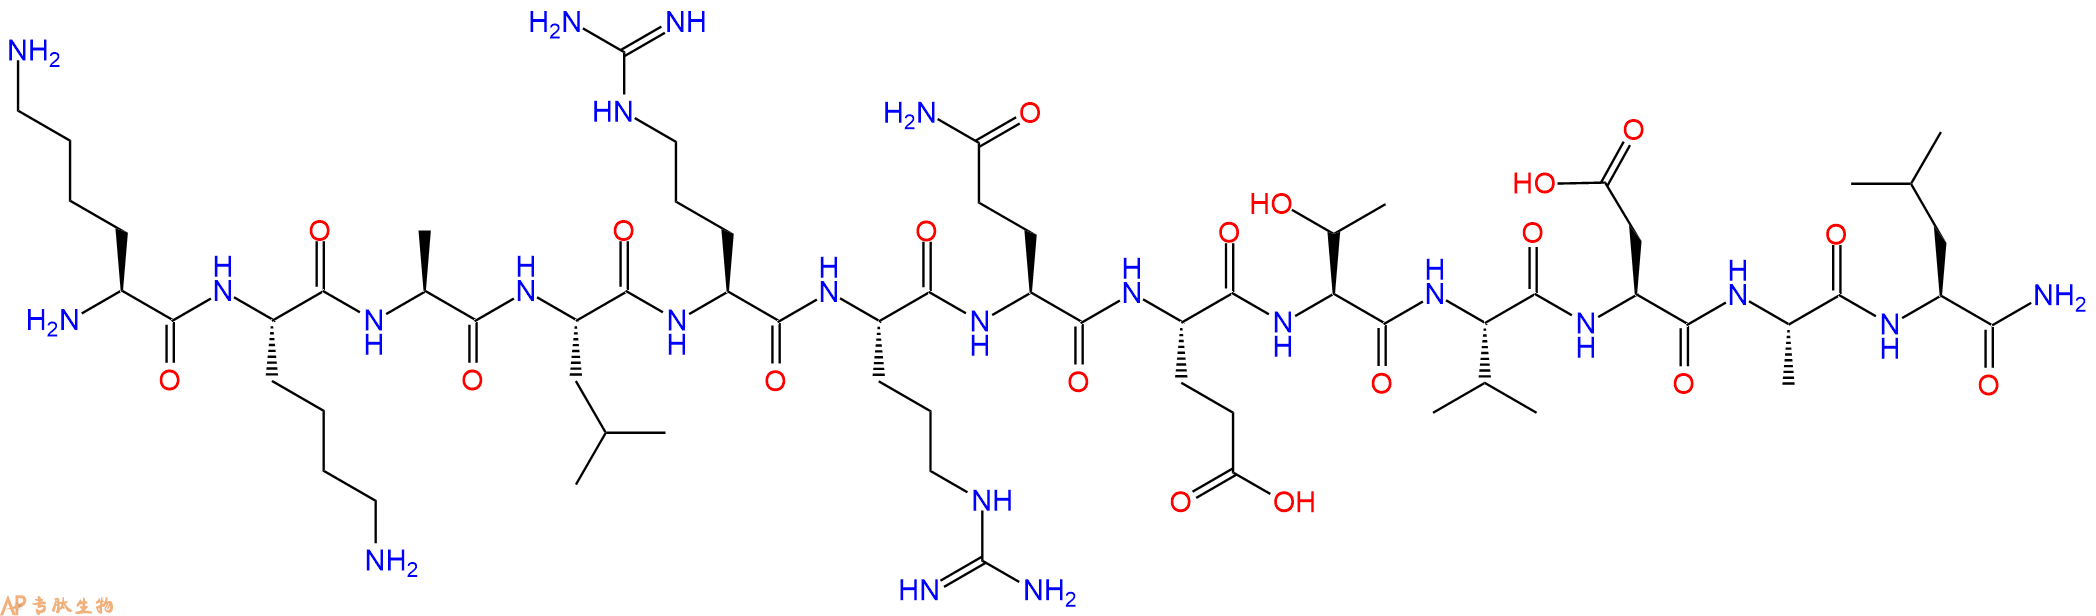 专肽生物产品钙调蛋白激酶底物Autocamtide 2, amide